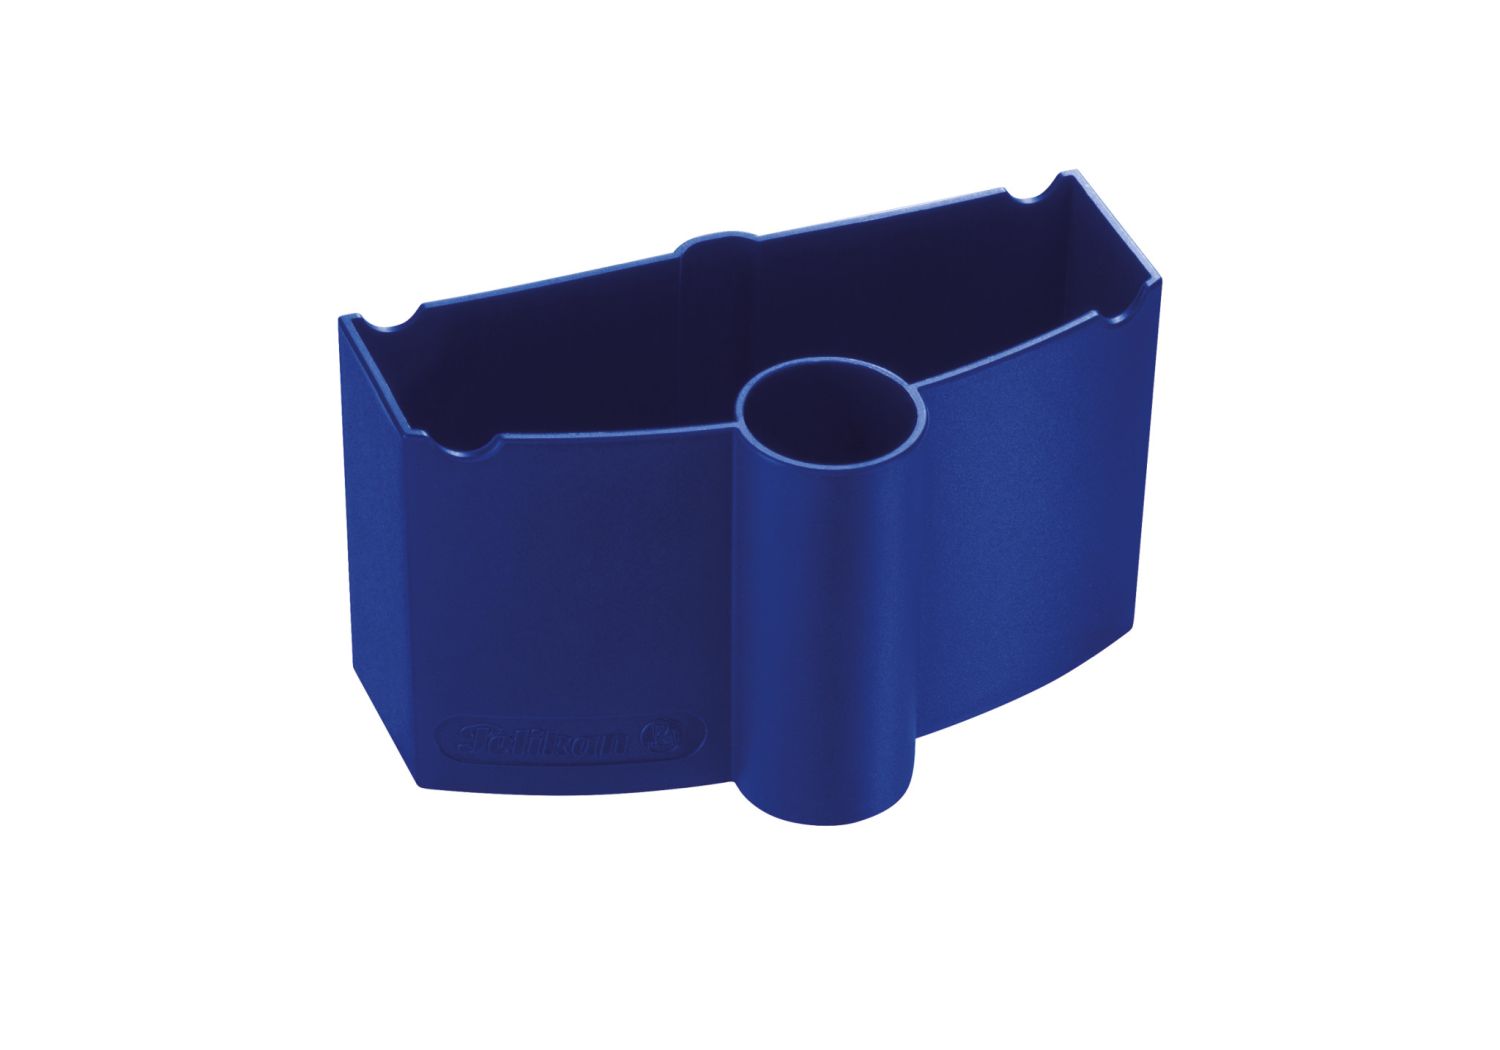 Wasserbox 735 - 55 x 100 x 55 mm, blau, Karton mit 1 Stück